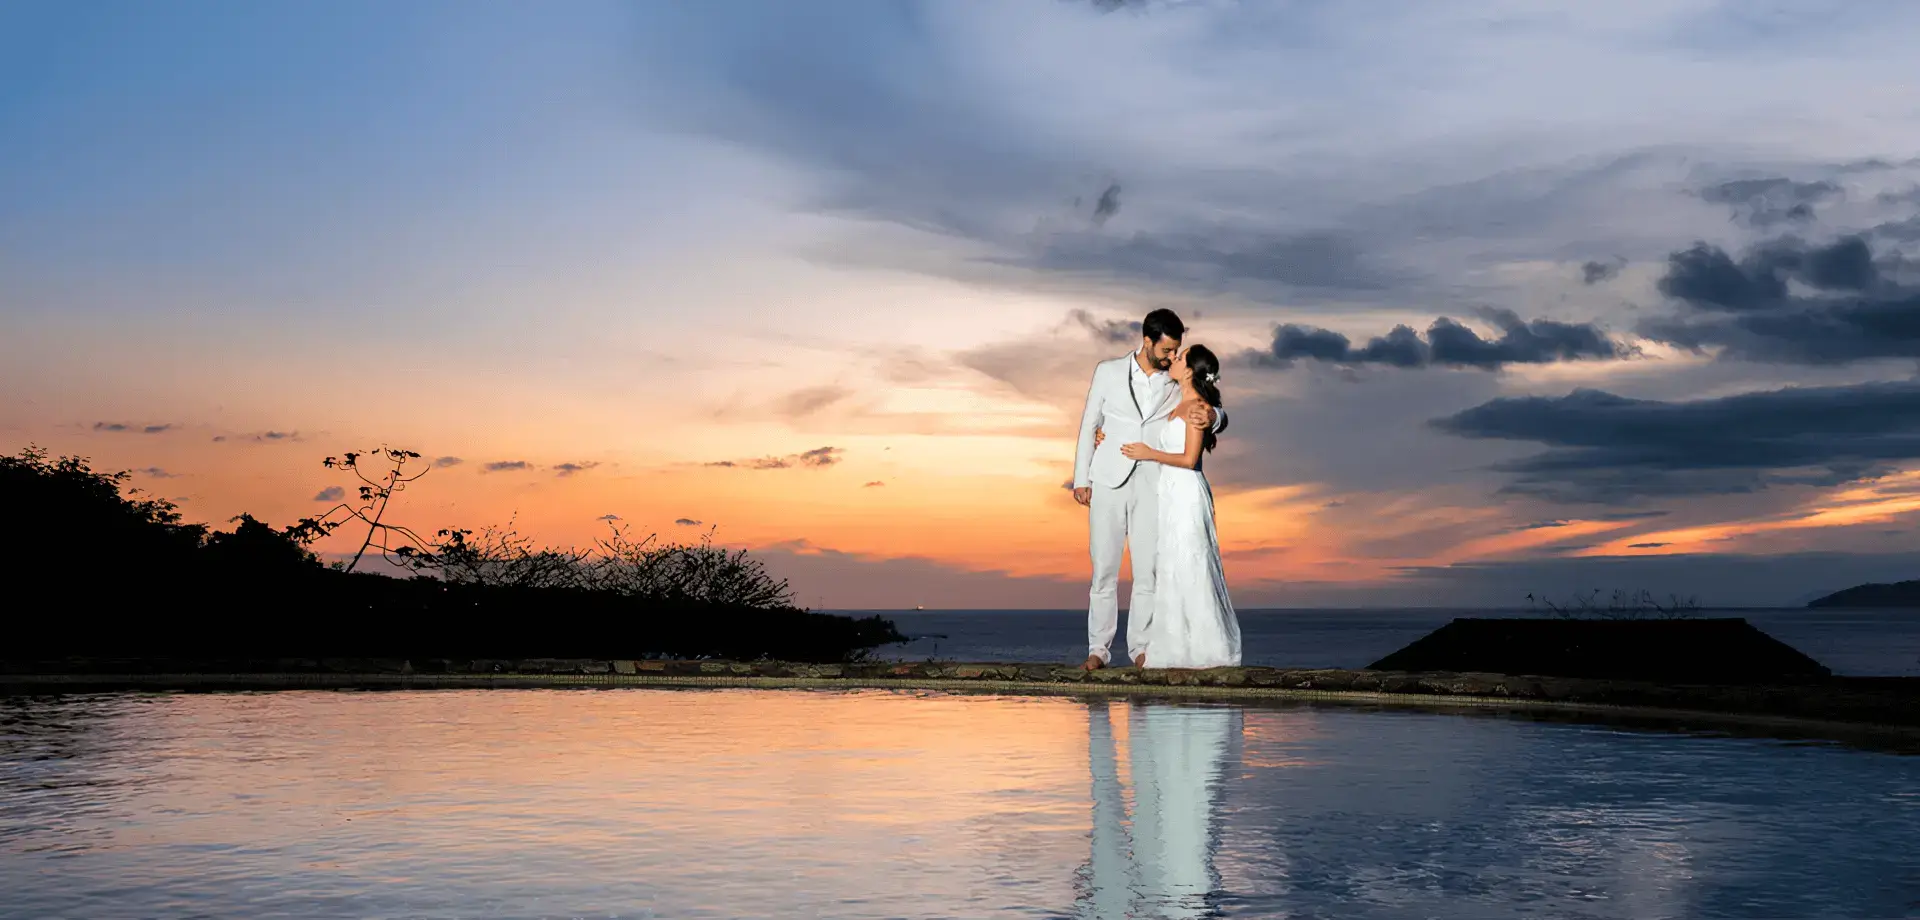 Um casal se beijando em frente a um lago